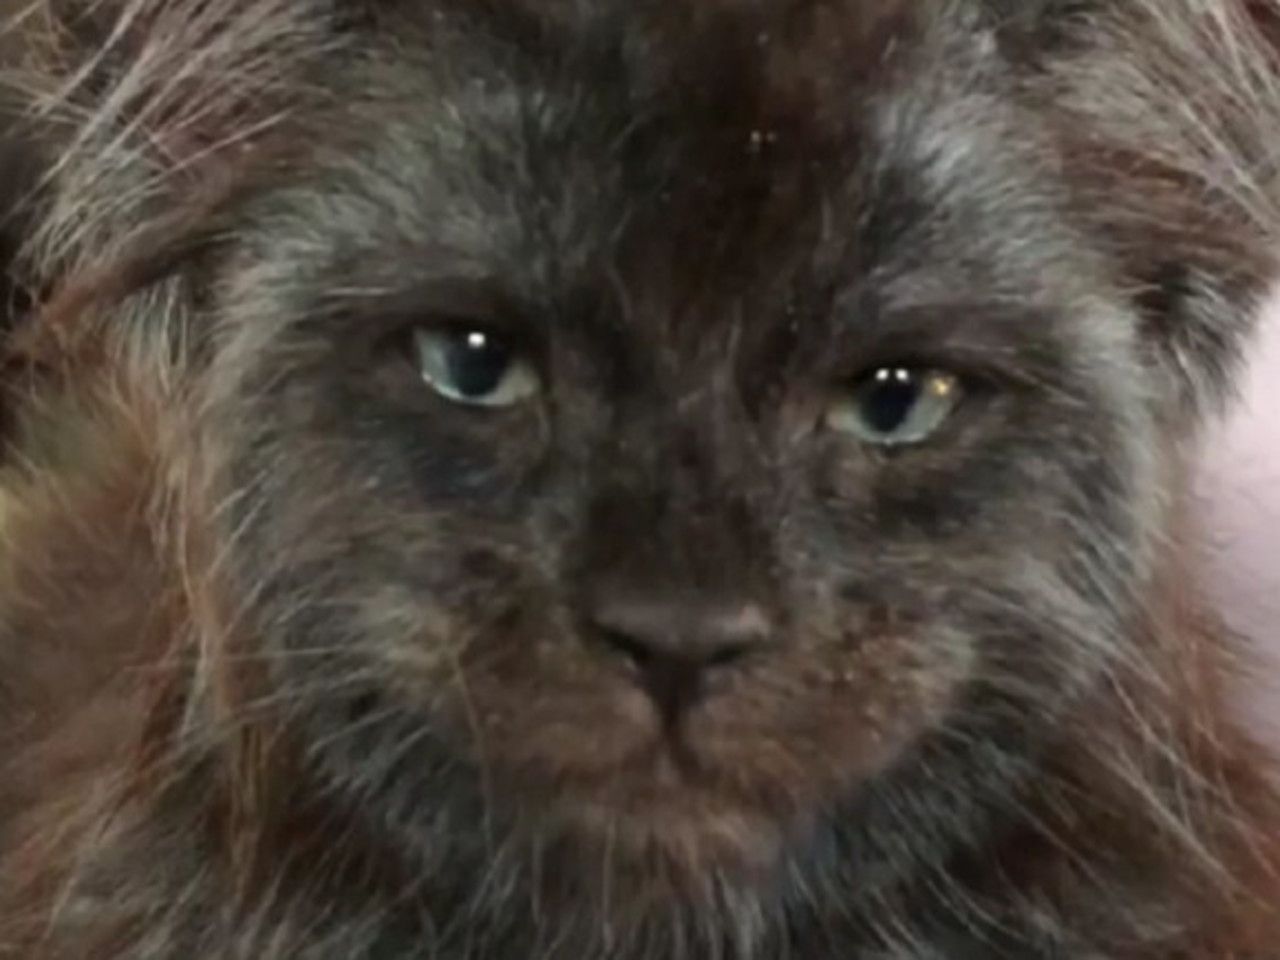 Пробирает до мурашек: в России нашли кота с человеческим лицом - Росбалт